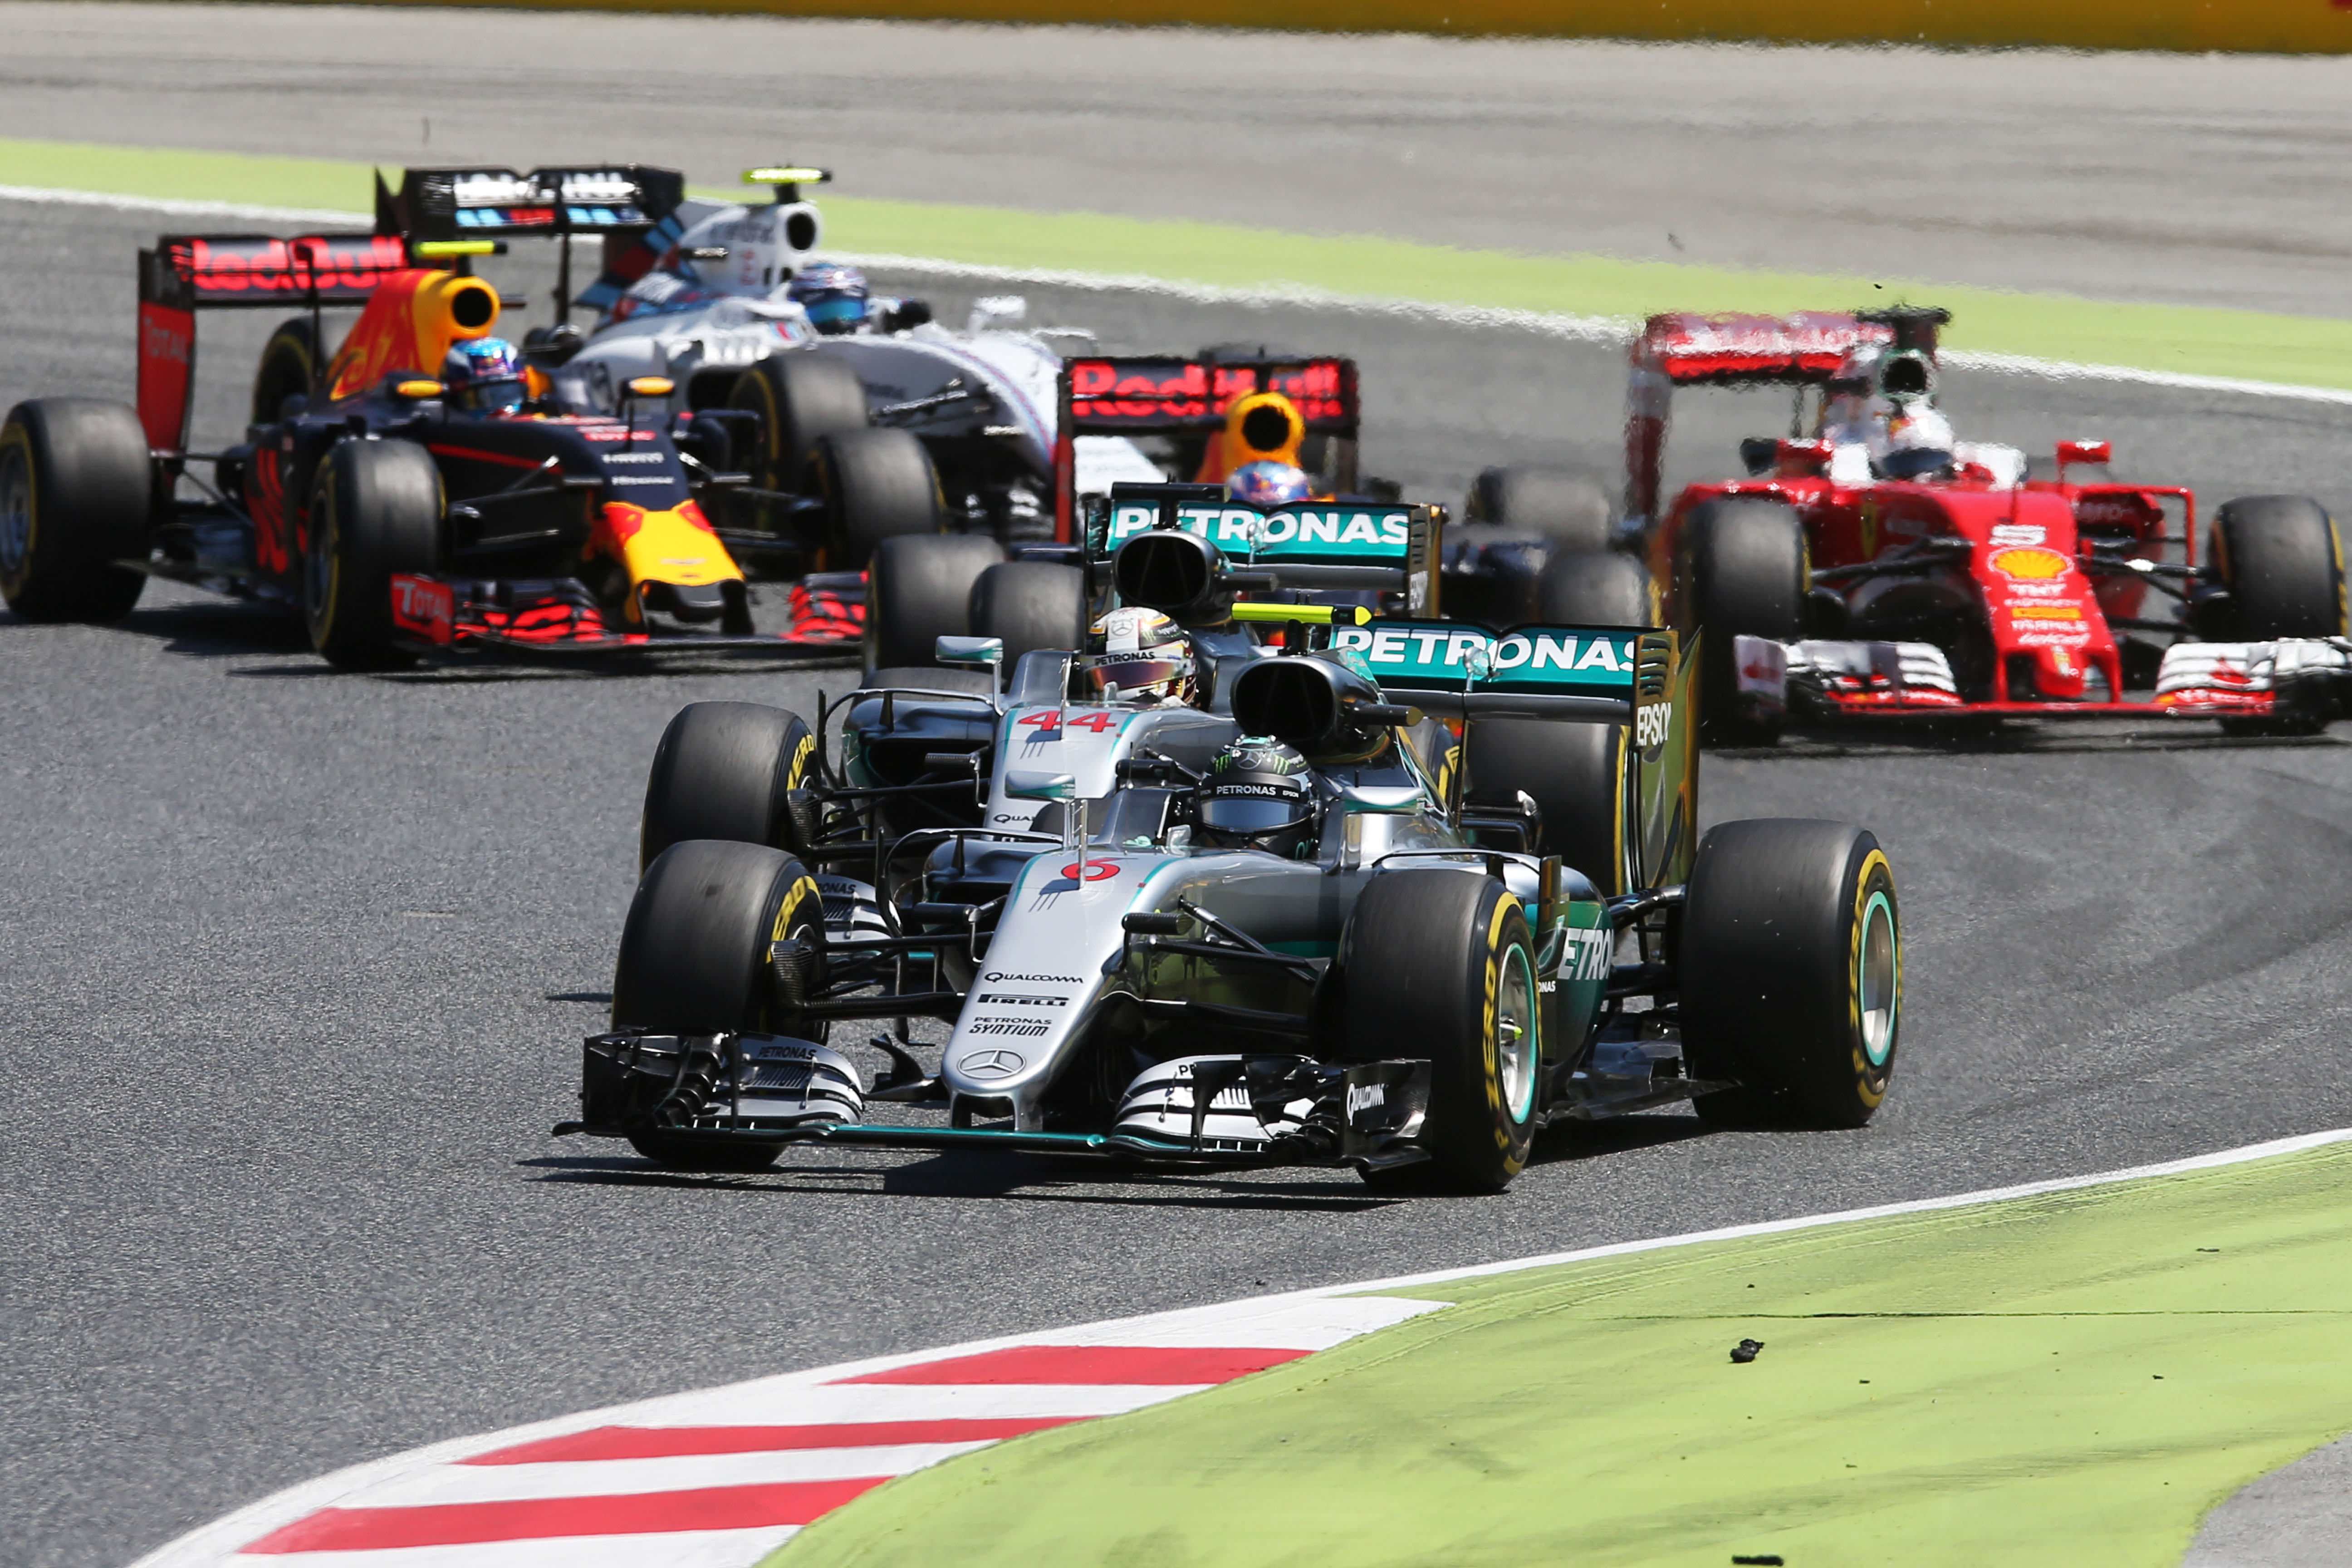 Spanish Grand Prix 2016